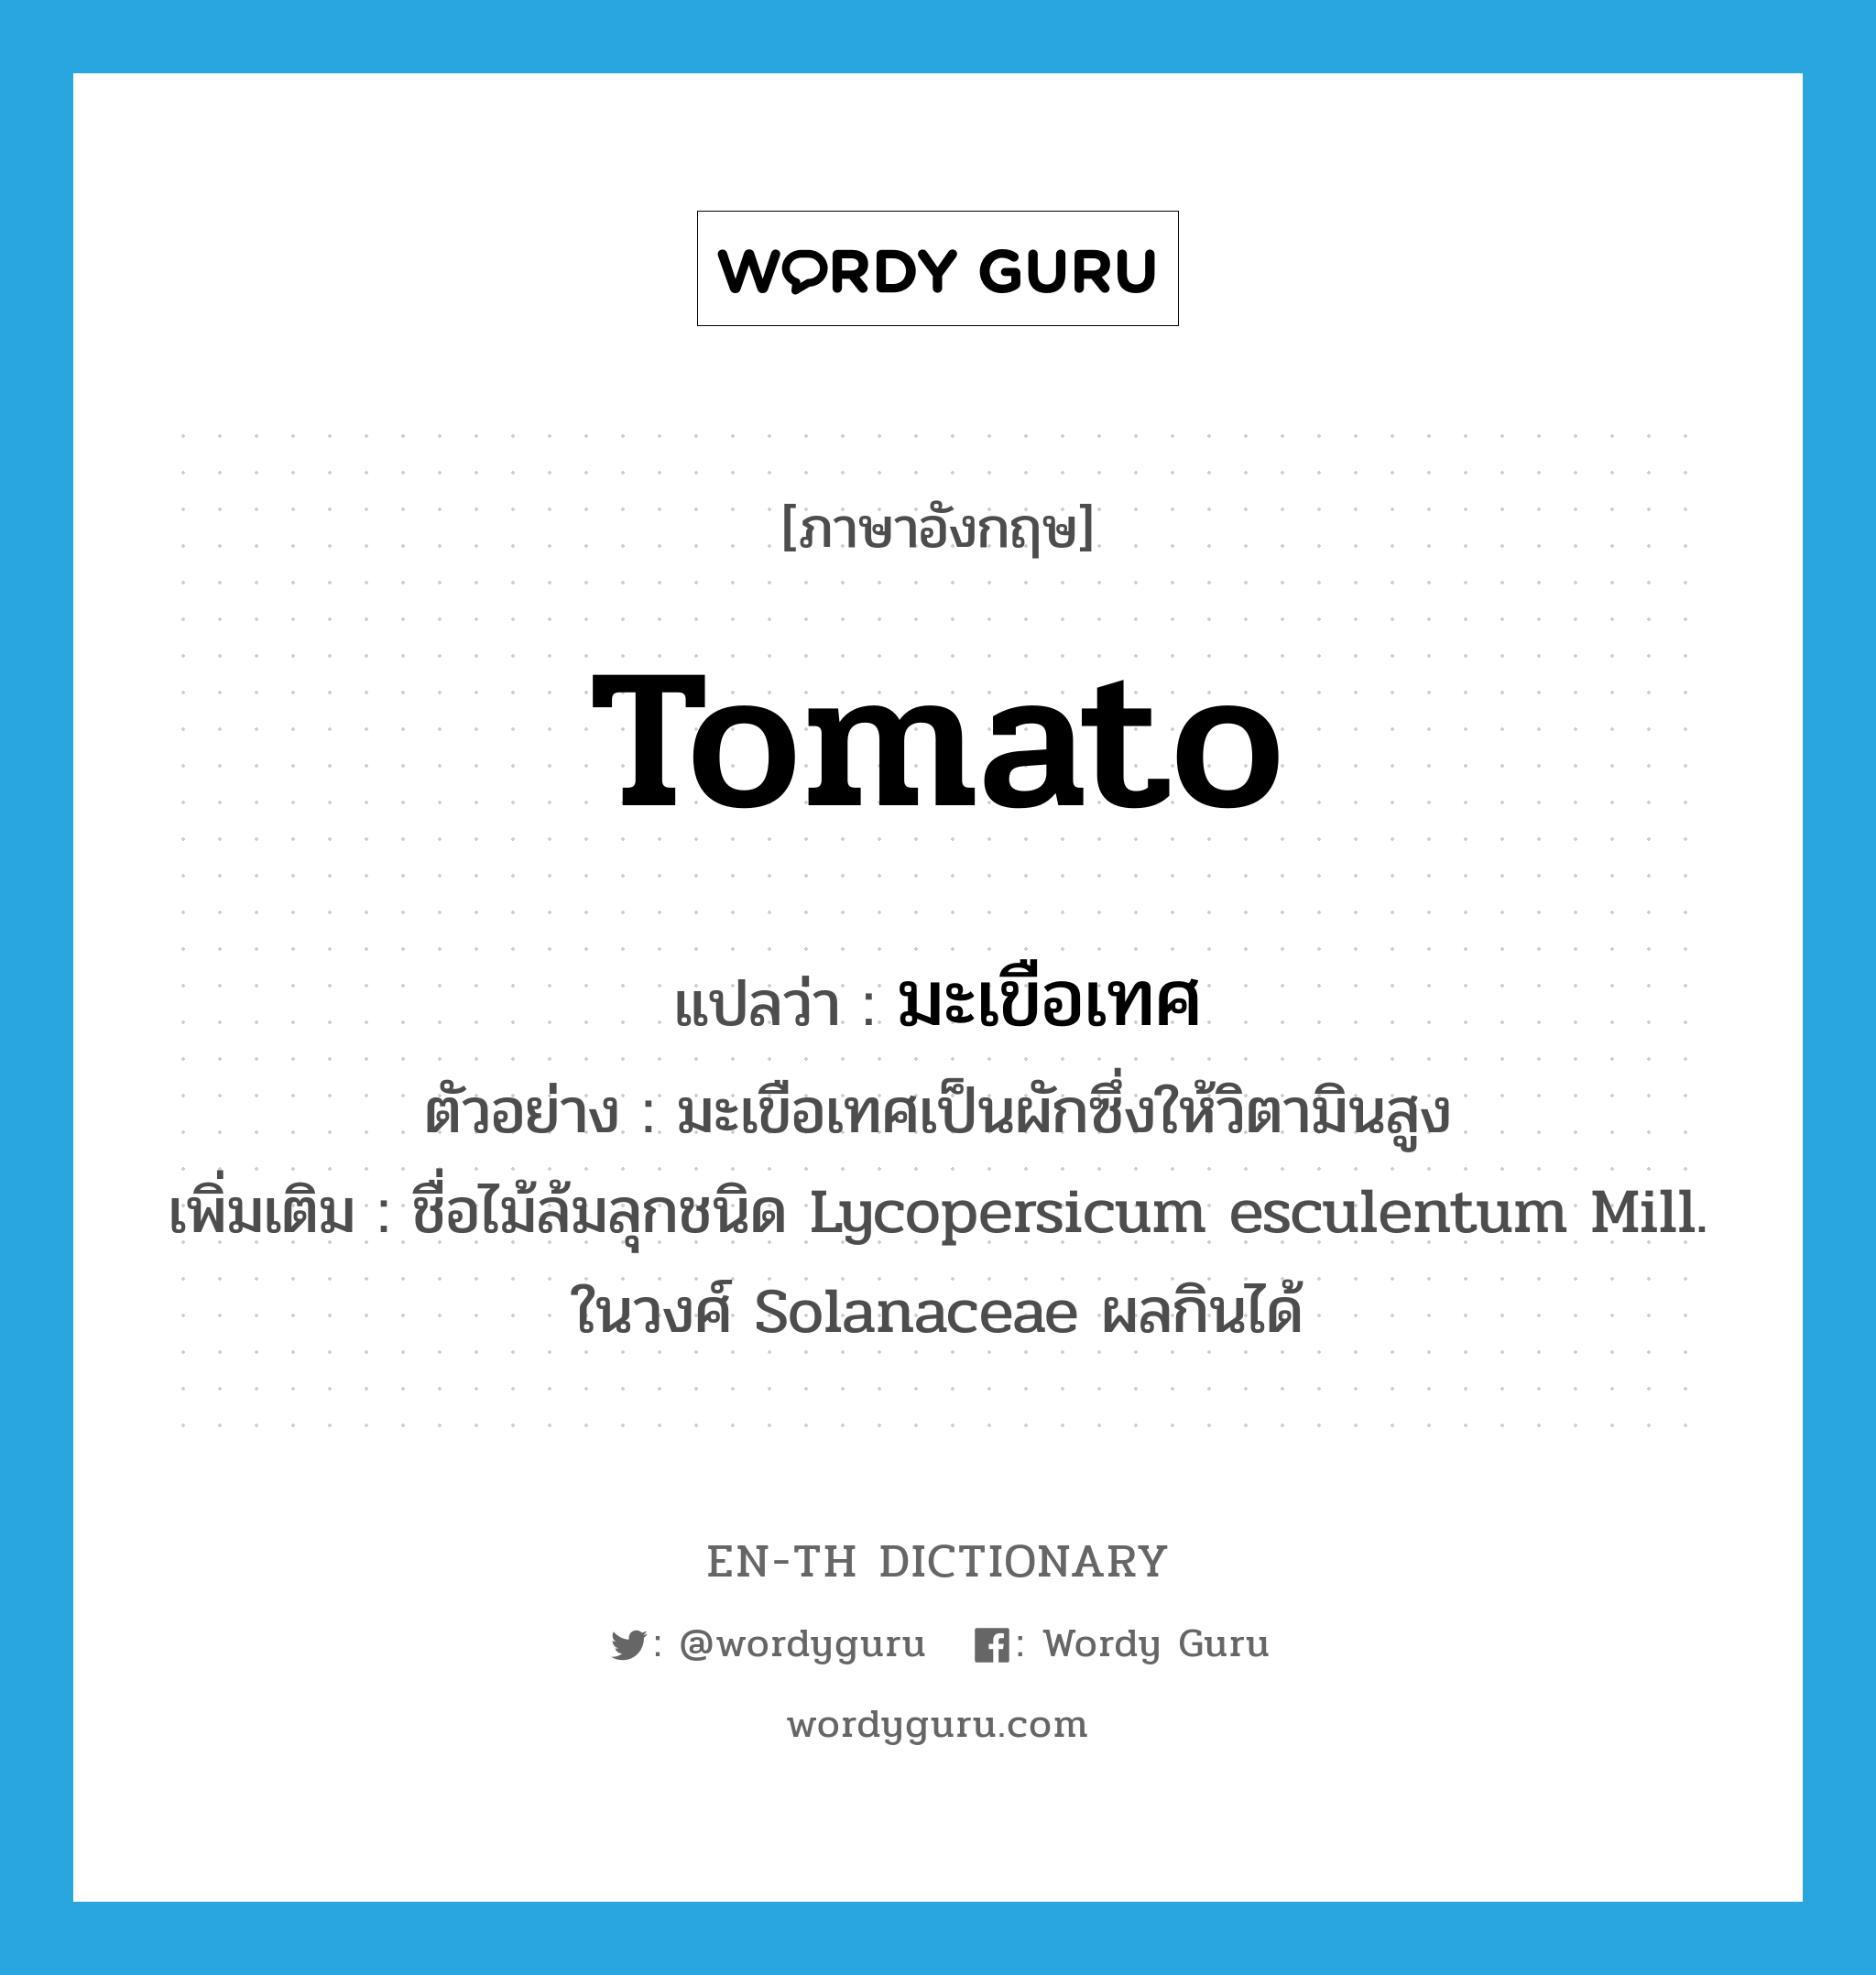 มะเขือเทศ ภาษาอังกฤษ?, คำศัพท์ภาษาอังกฤษ มะเขือเทศ แปลว่า tomato ประเภท N ตัวอย่าง มะเขือเทศเป็นผักซึ่งให้วิตามินสูง เพิ่มเติม ชื่อไม้ล้มลุกชนิด Lycopersicum esculentum Mill. ในวงศ์ Solanaceae ผลกินได้ หมวด N